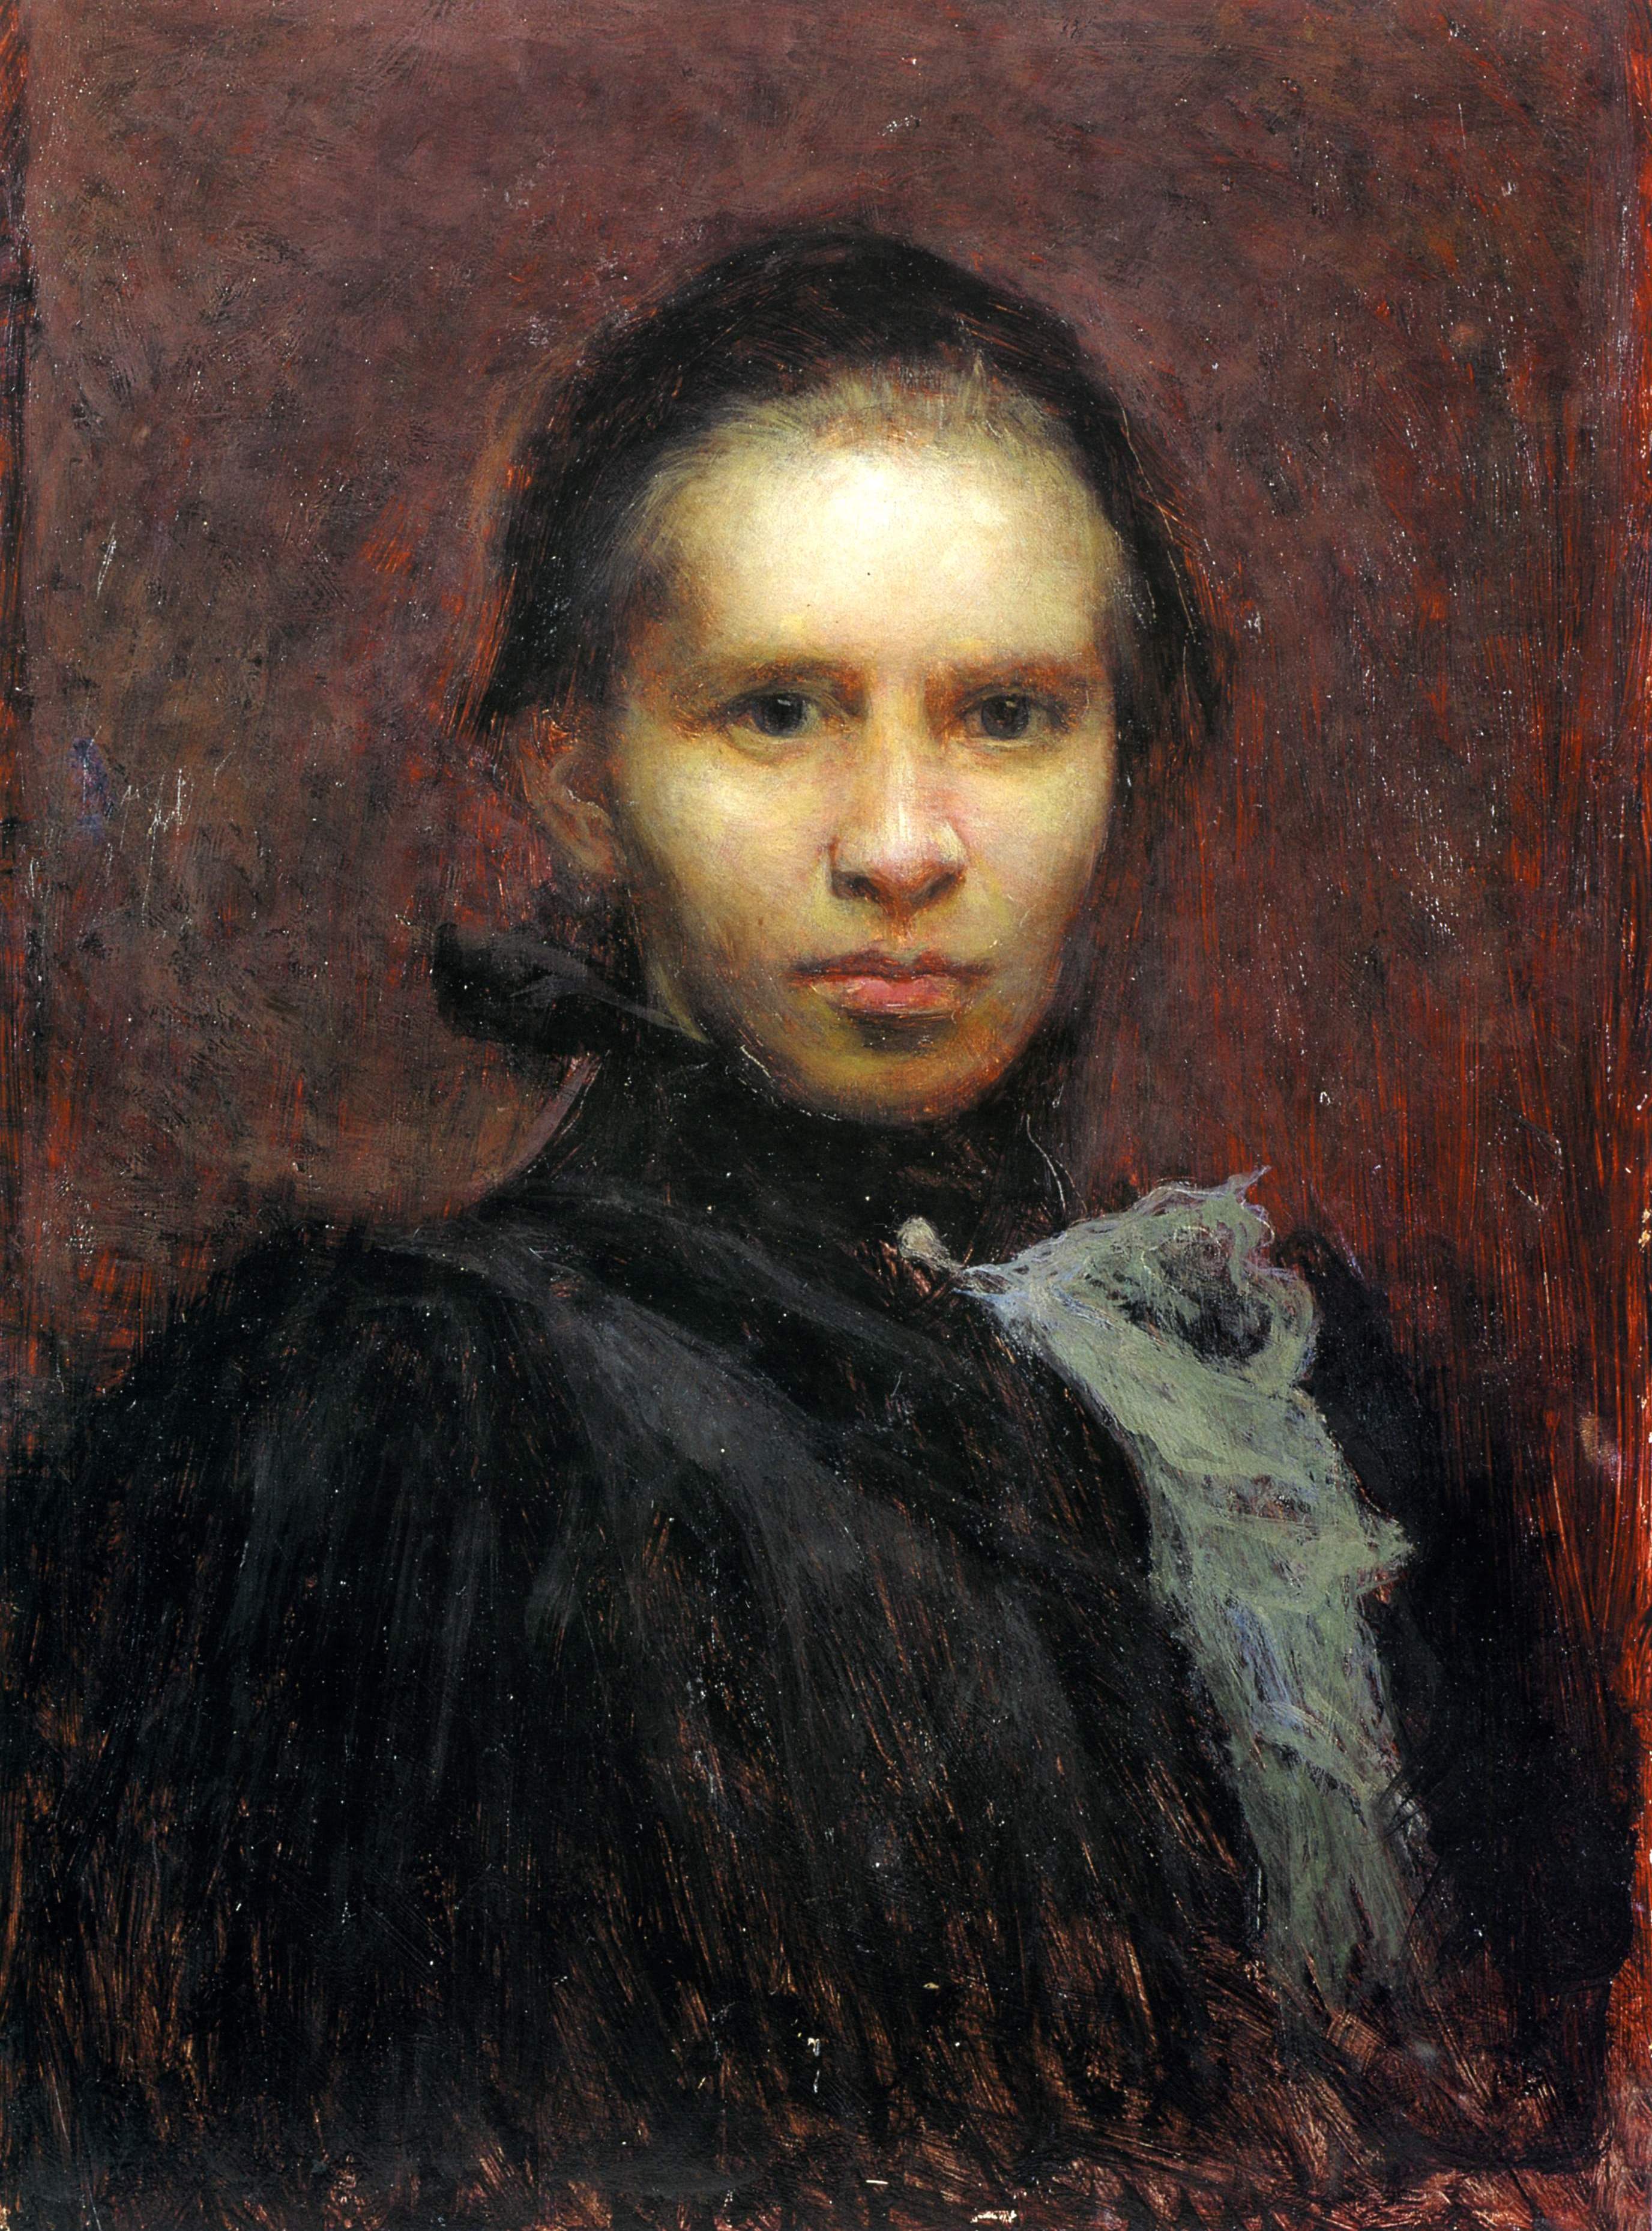 Труш. Портрет Леси Украинки. 1900 